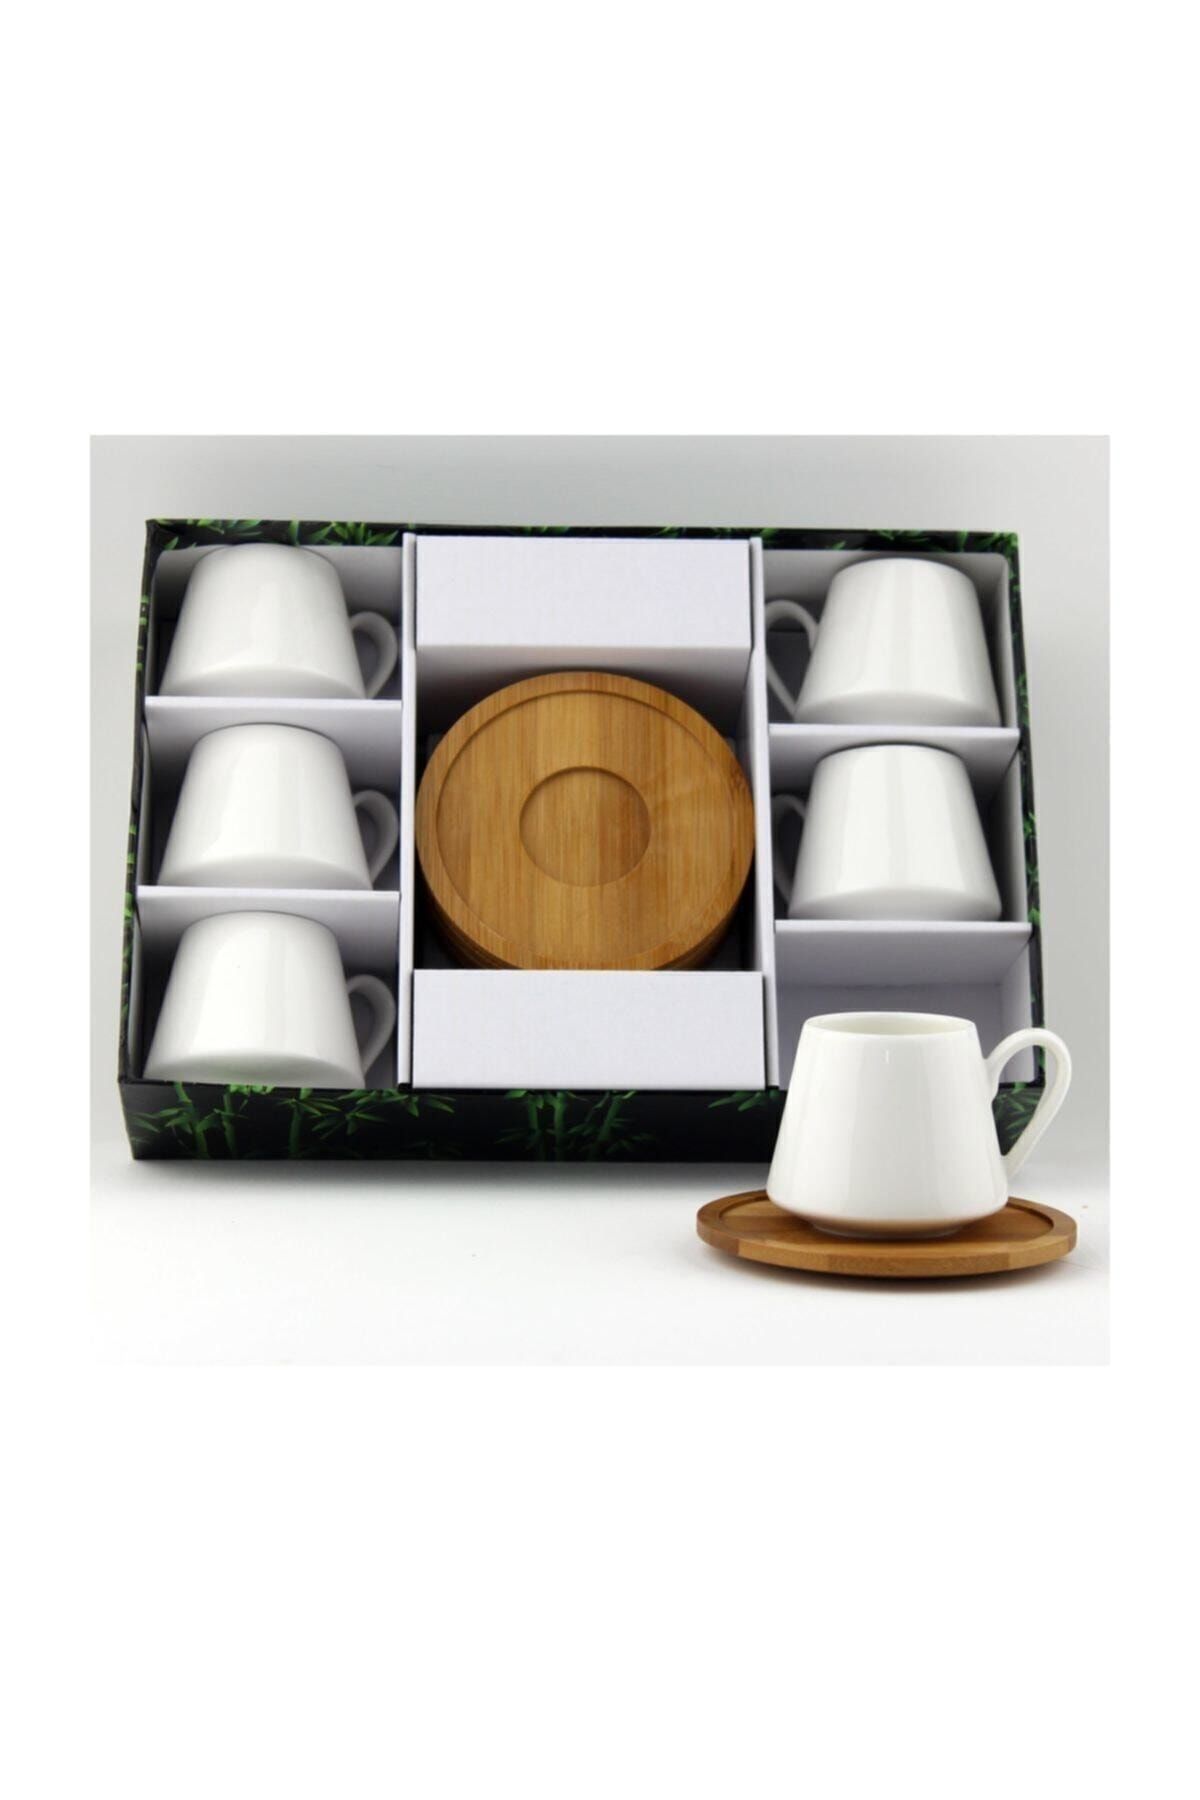 Lavin Porselen Bambu Tabak Kahve Fincan Takımı 2592